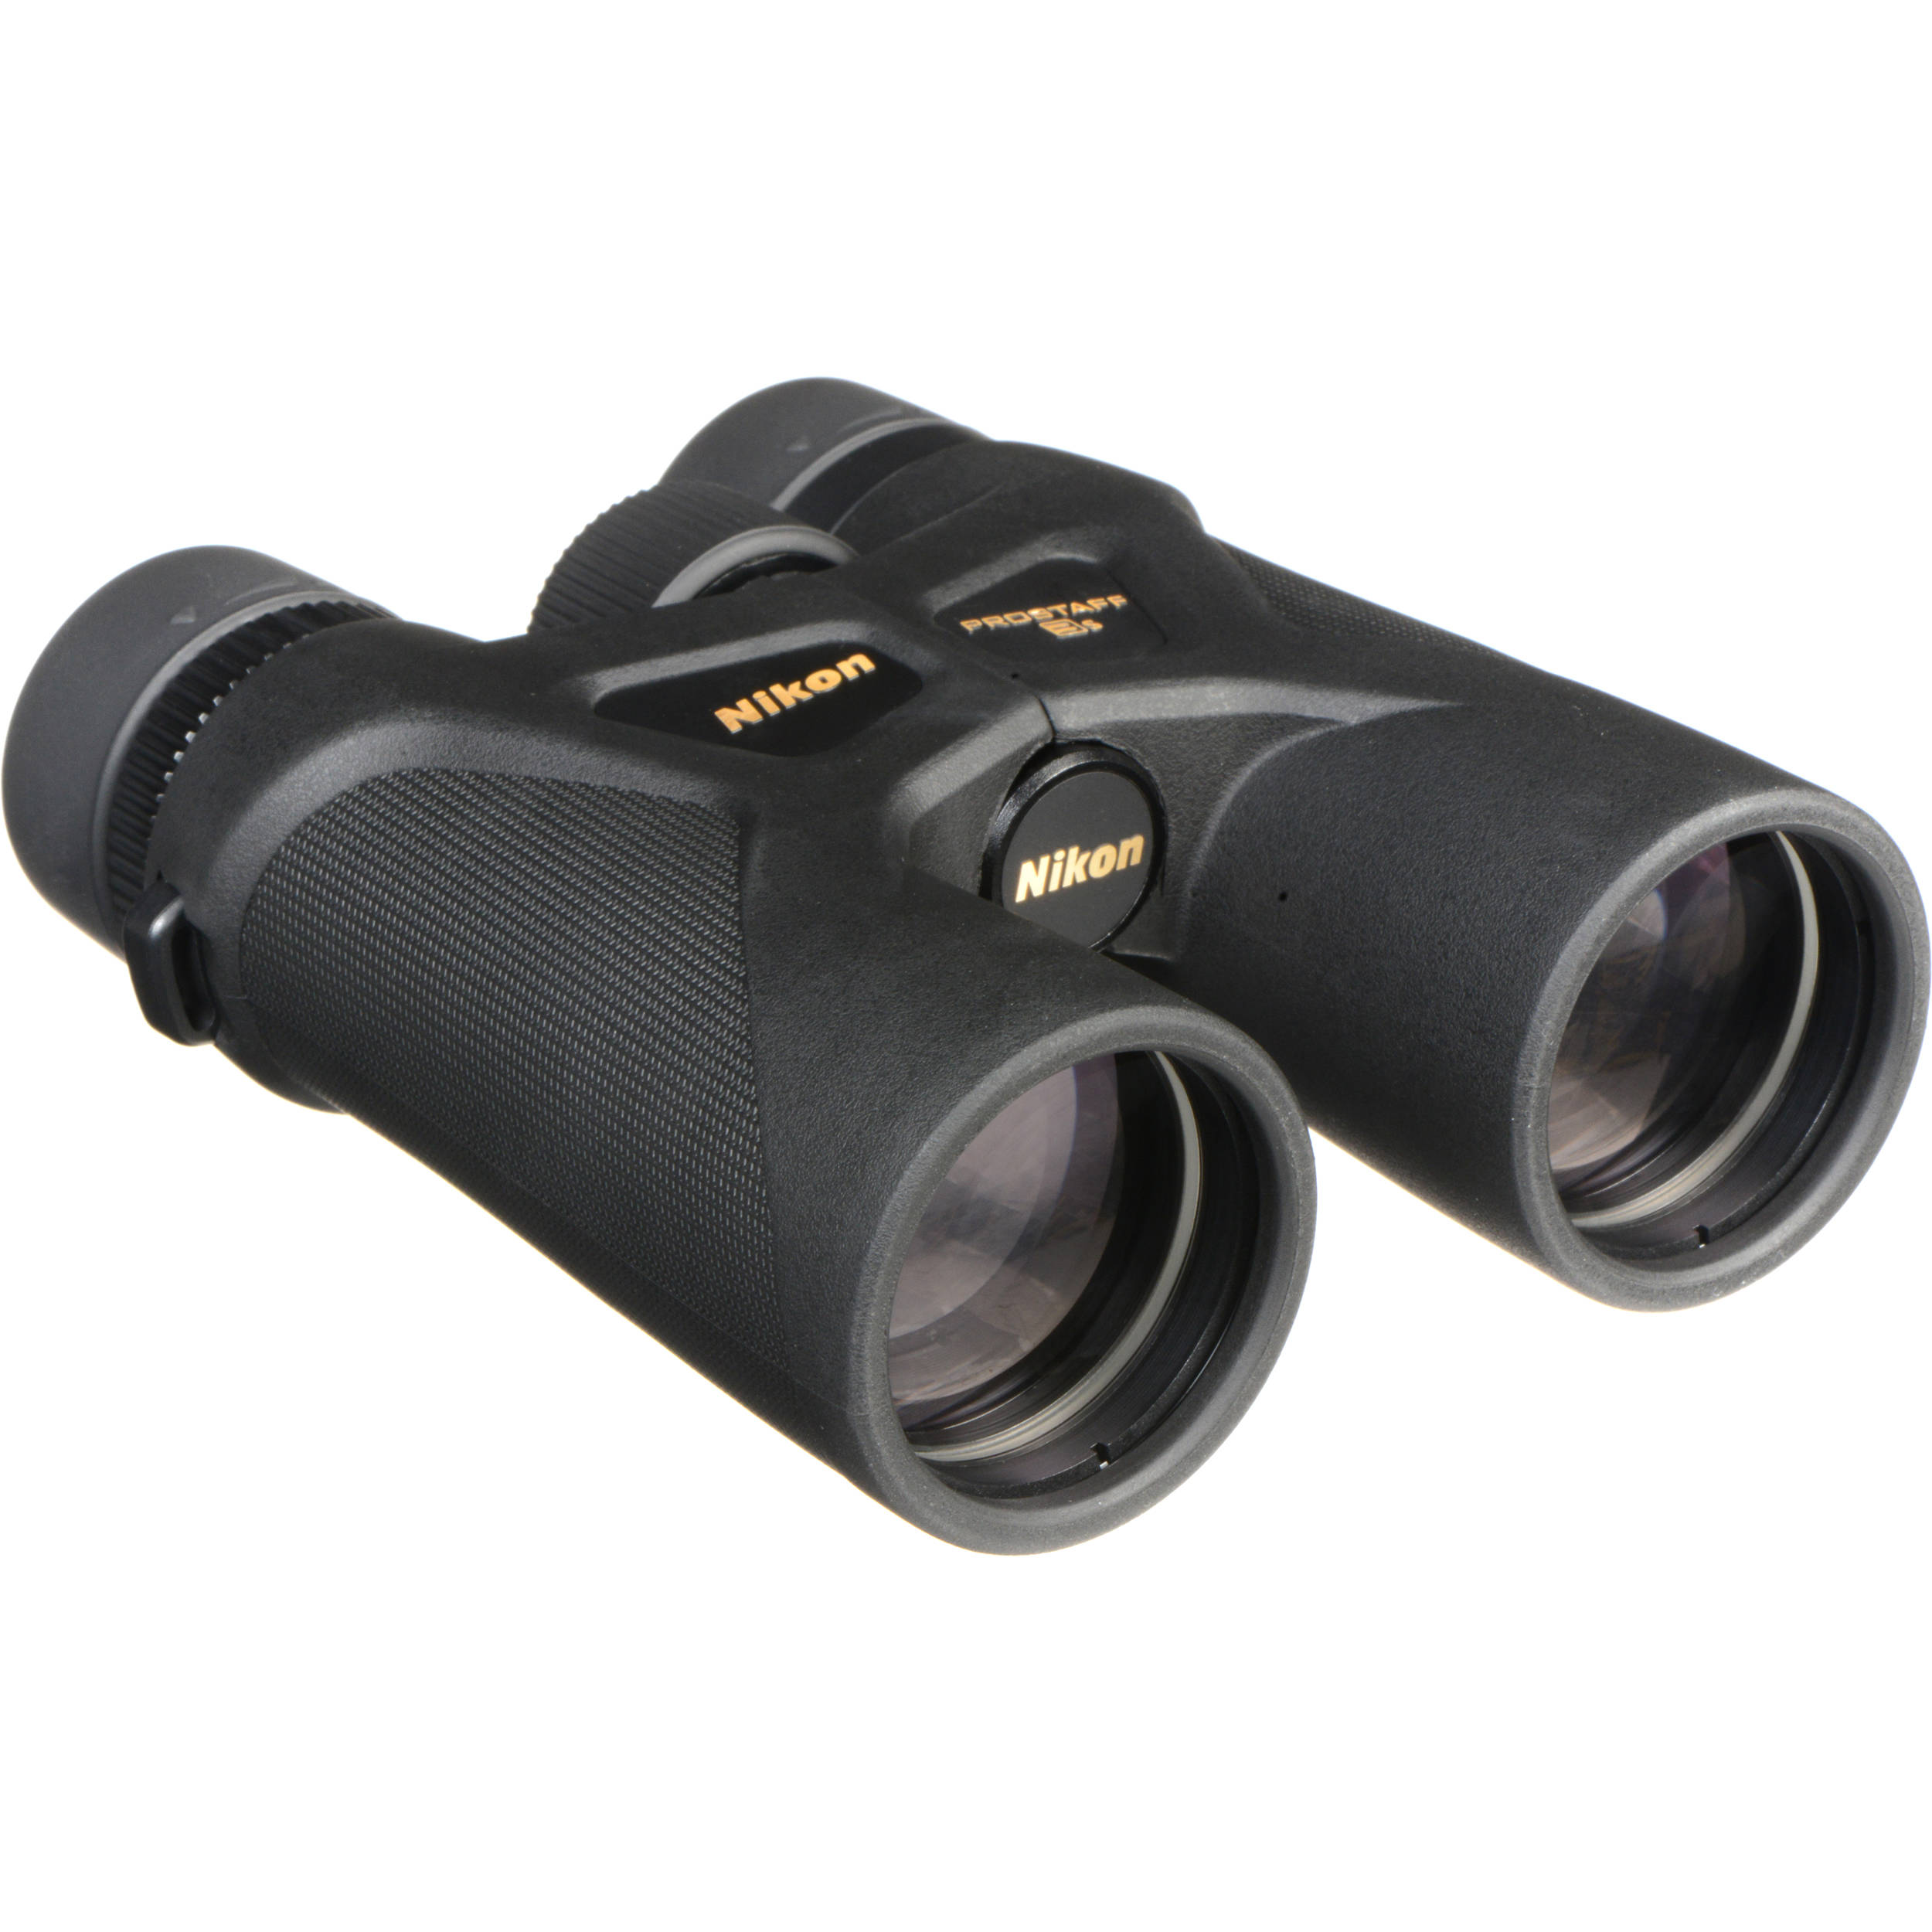 b&h binoculars